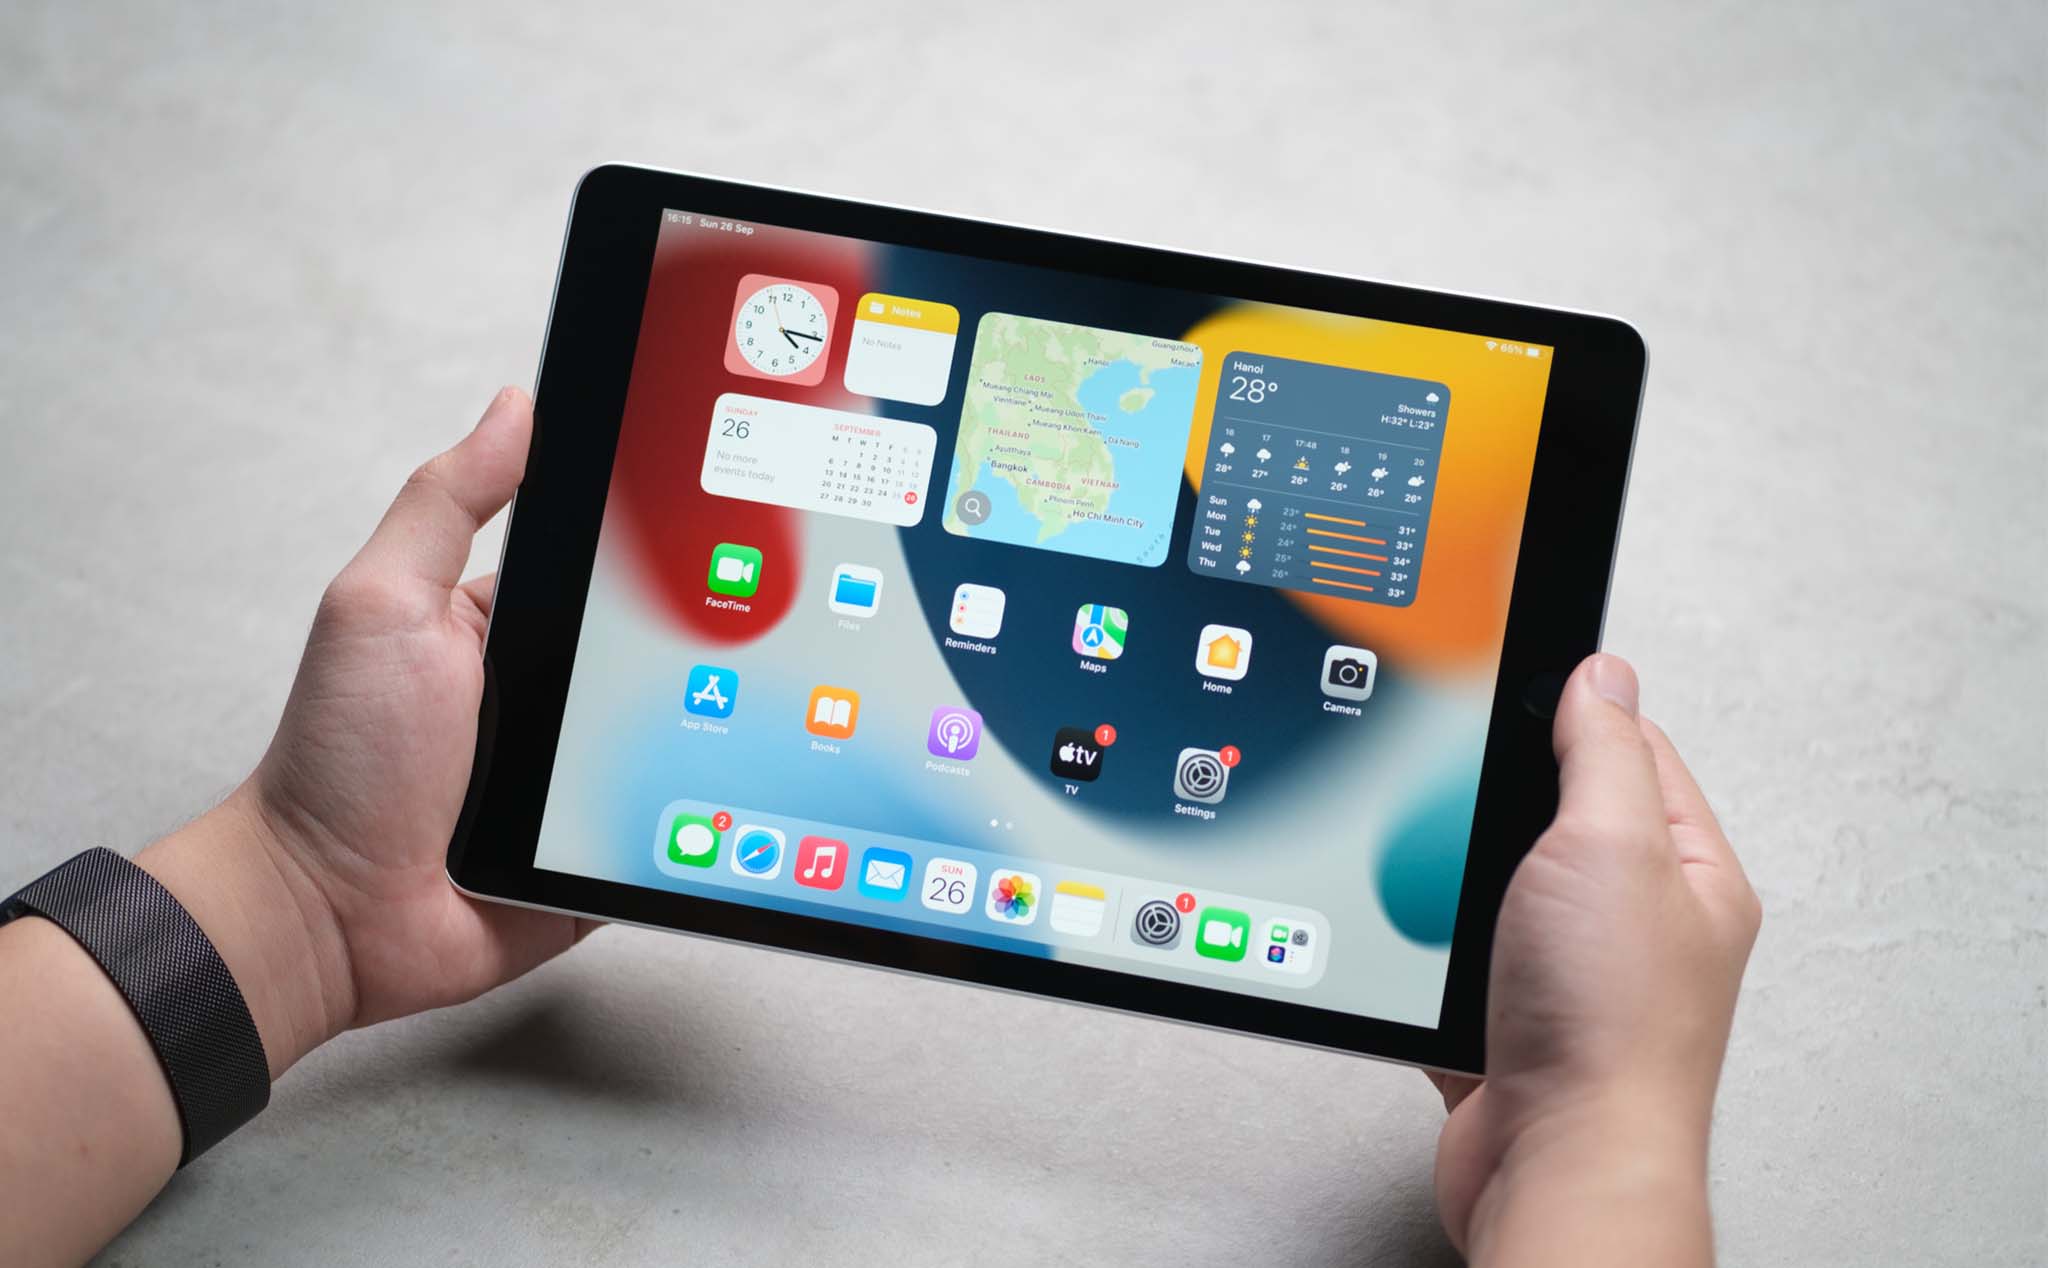 iPad là một trong những thiết bị cao cấp nhất trong gia đình Apple. Không chỉ là một chiếc máy tính bảng thông thường, iPad còn mang đến cho bạn cách vẽ và sáng tạo hoàn toàn mới. Đừng bỏ lỡ cơ hội để trải nghiệm Apple Pencil trên iPad!